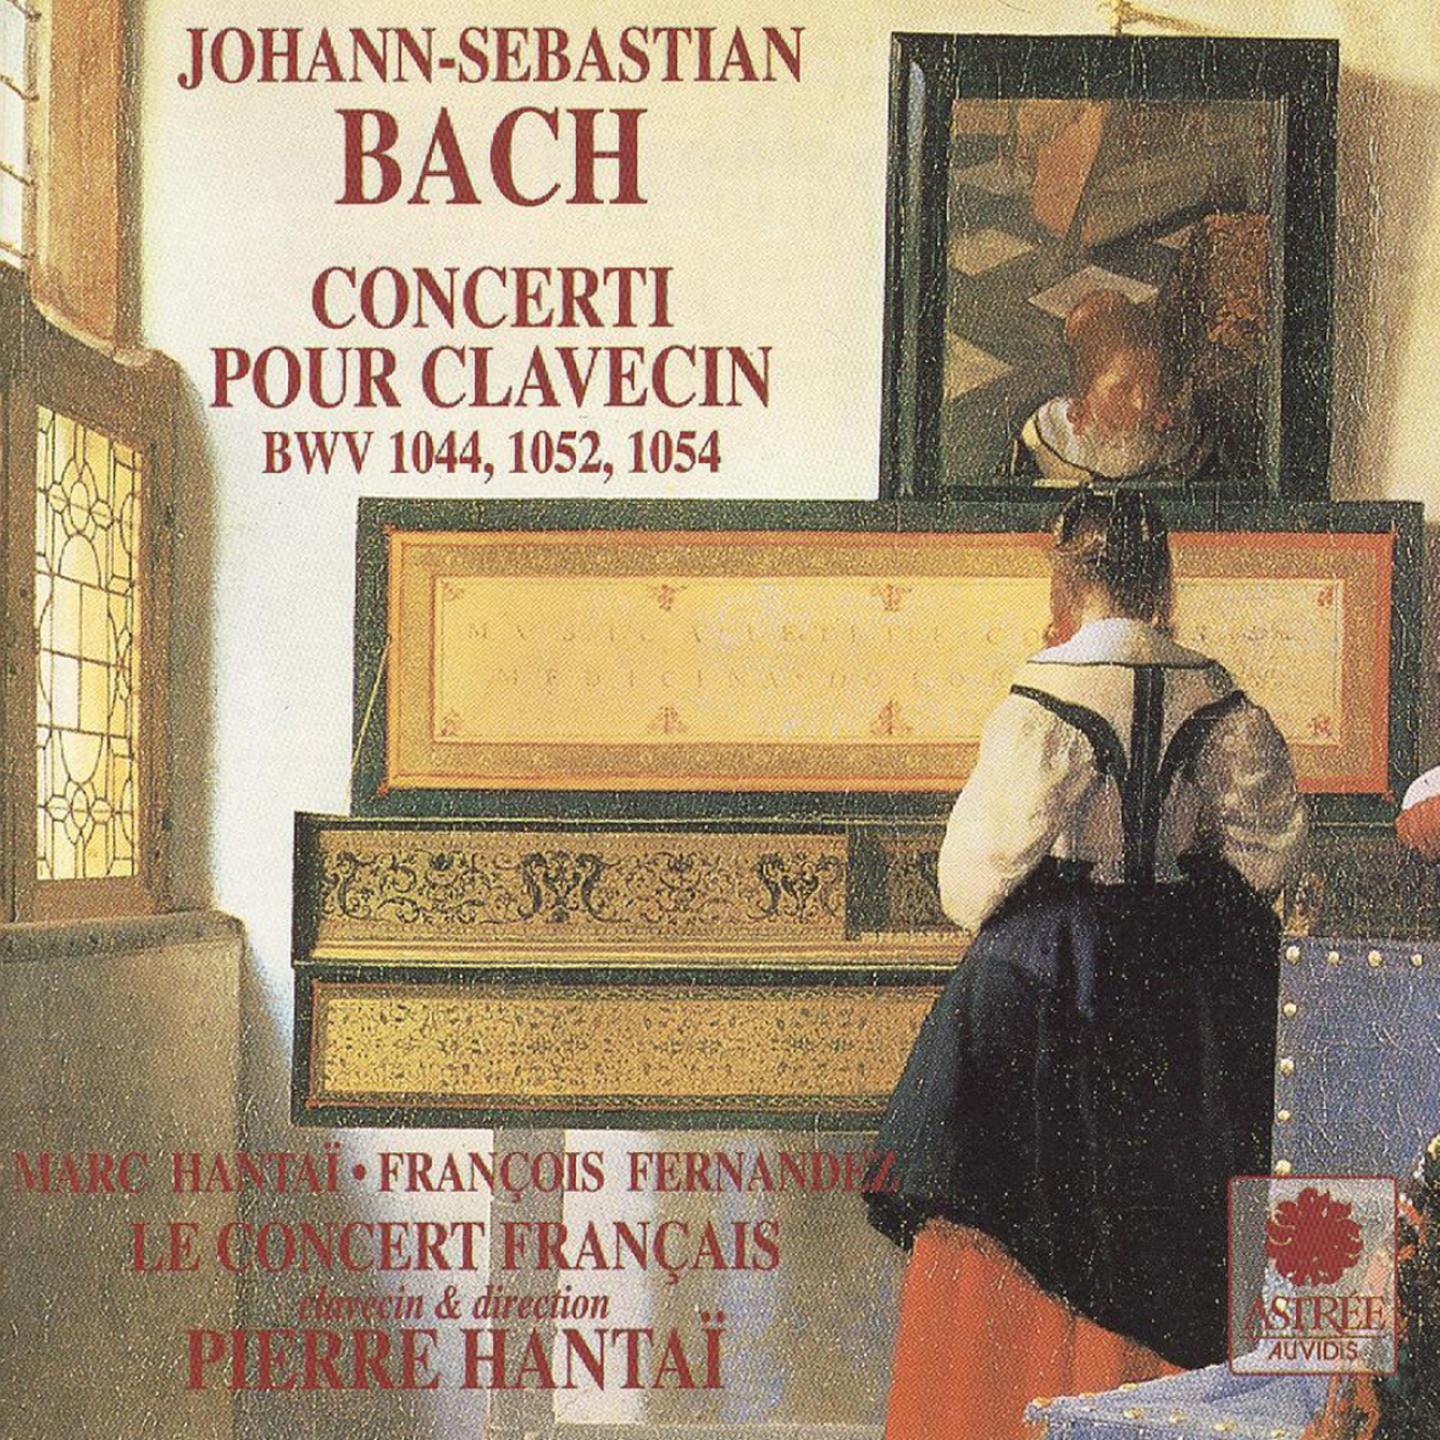 Harpsichord Concerto No. 3 in D Major, BWV 1054: II. Adagio e piano sempre